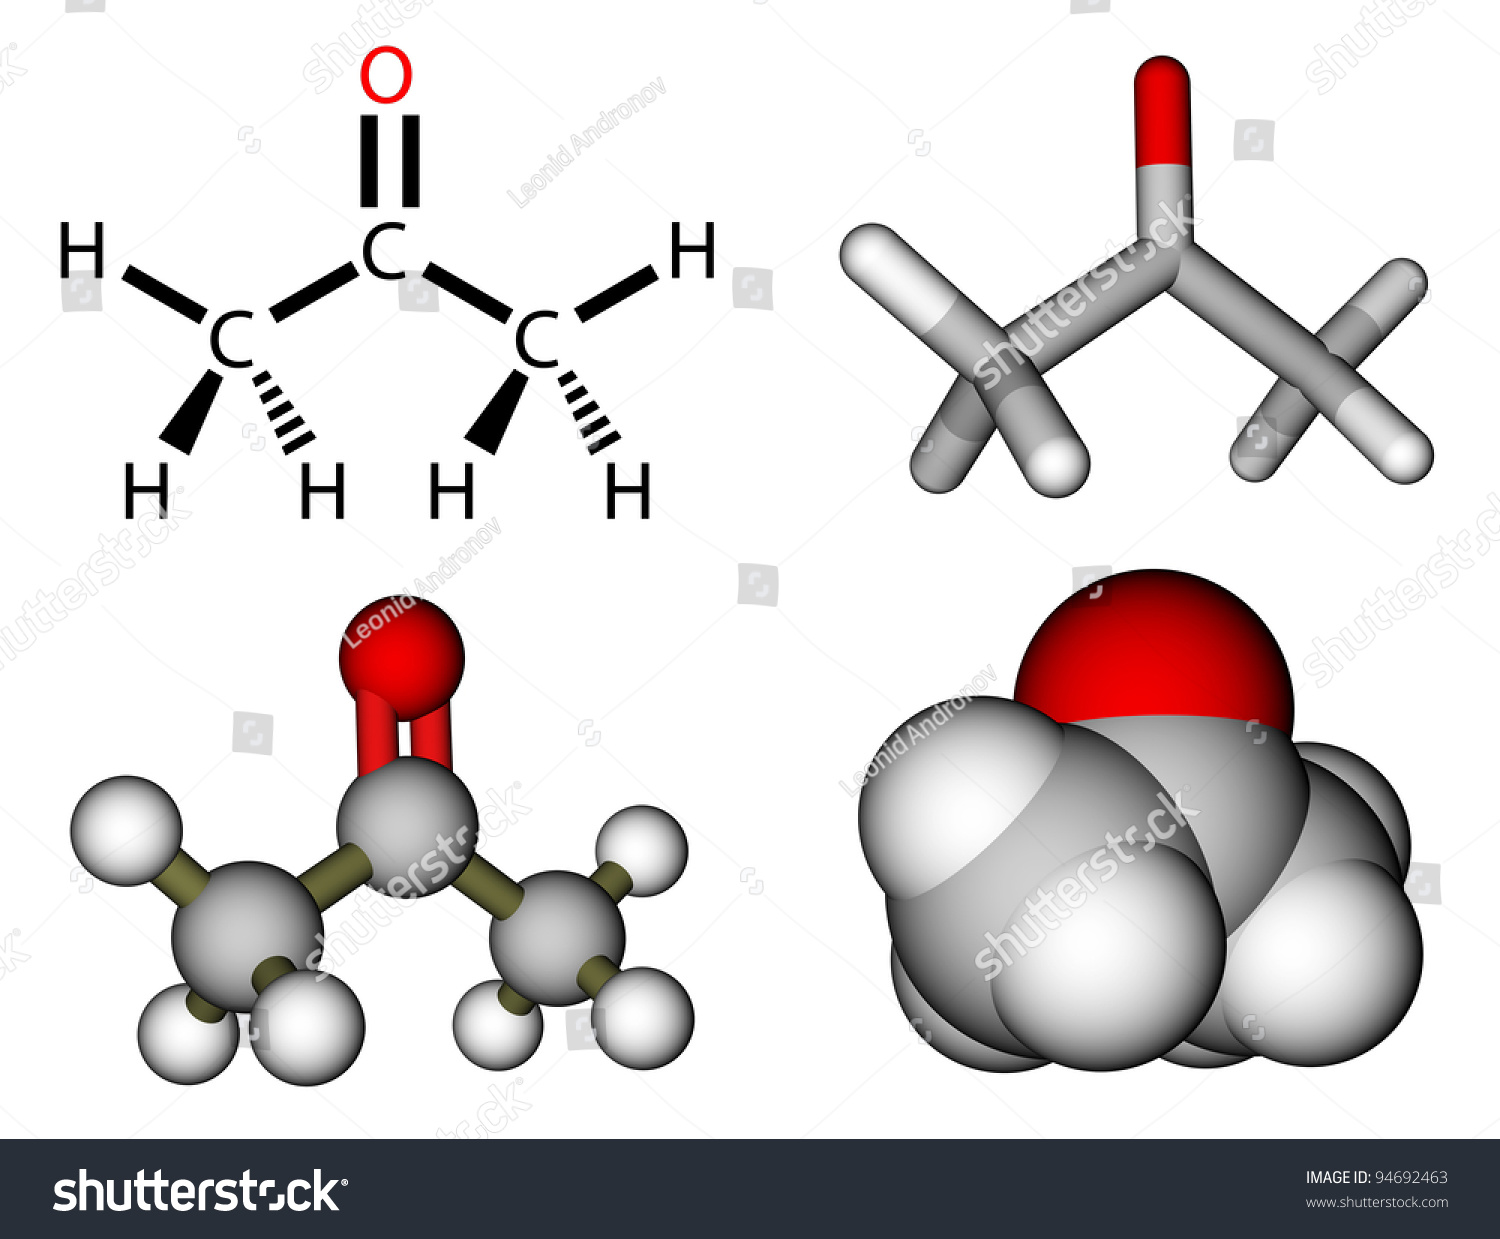 Acetone Structural Formula Molecular Models Stock Illustration 94692463 ...